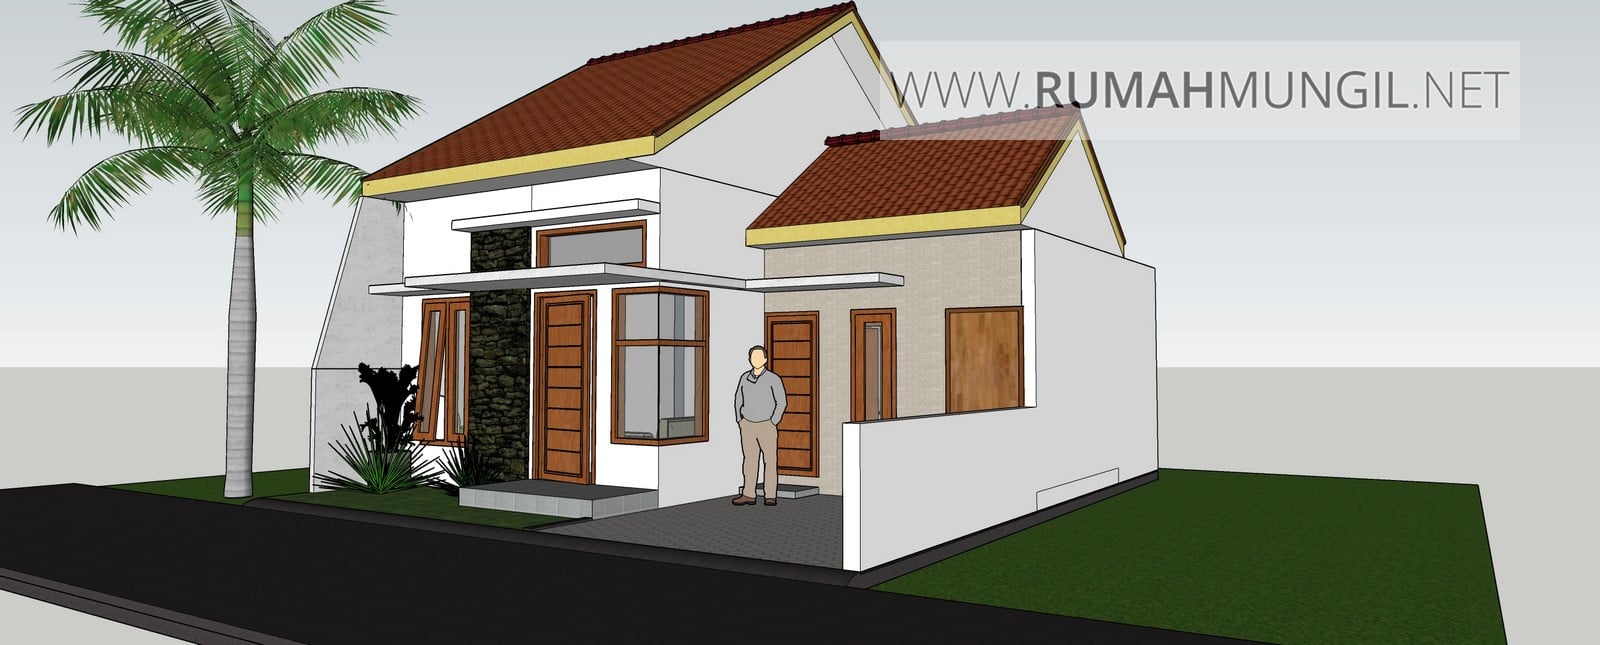 Desain Rumah Minimalis Ukuran 8x7 Deagam Design